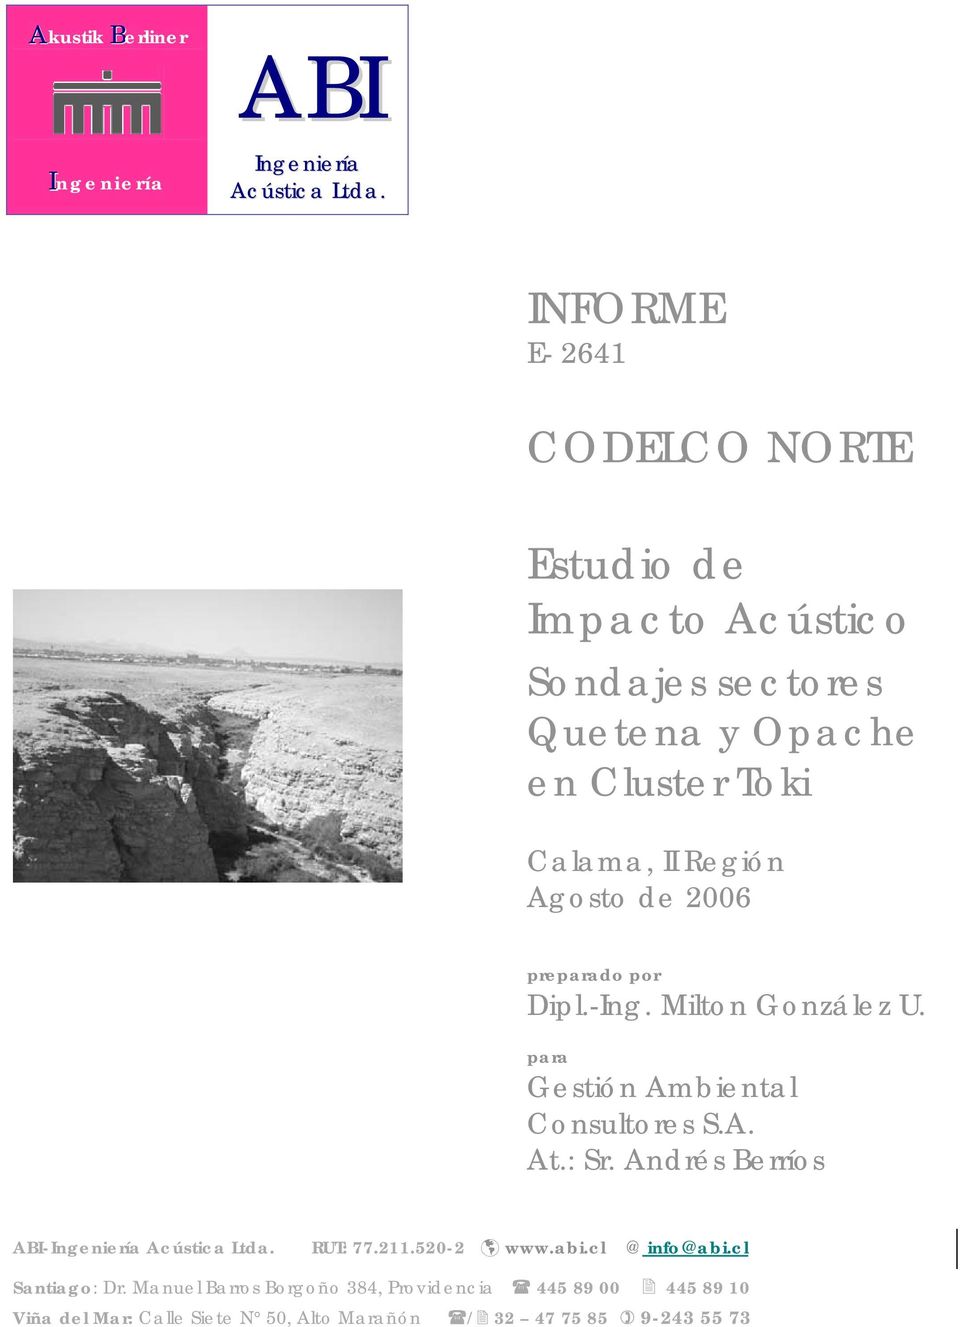 Agosto de 2006 preparado por Dipl.-Ing. Milton González U. para Gestión Ambiental Consultores S.A. At.: Sr.